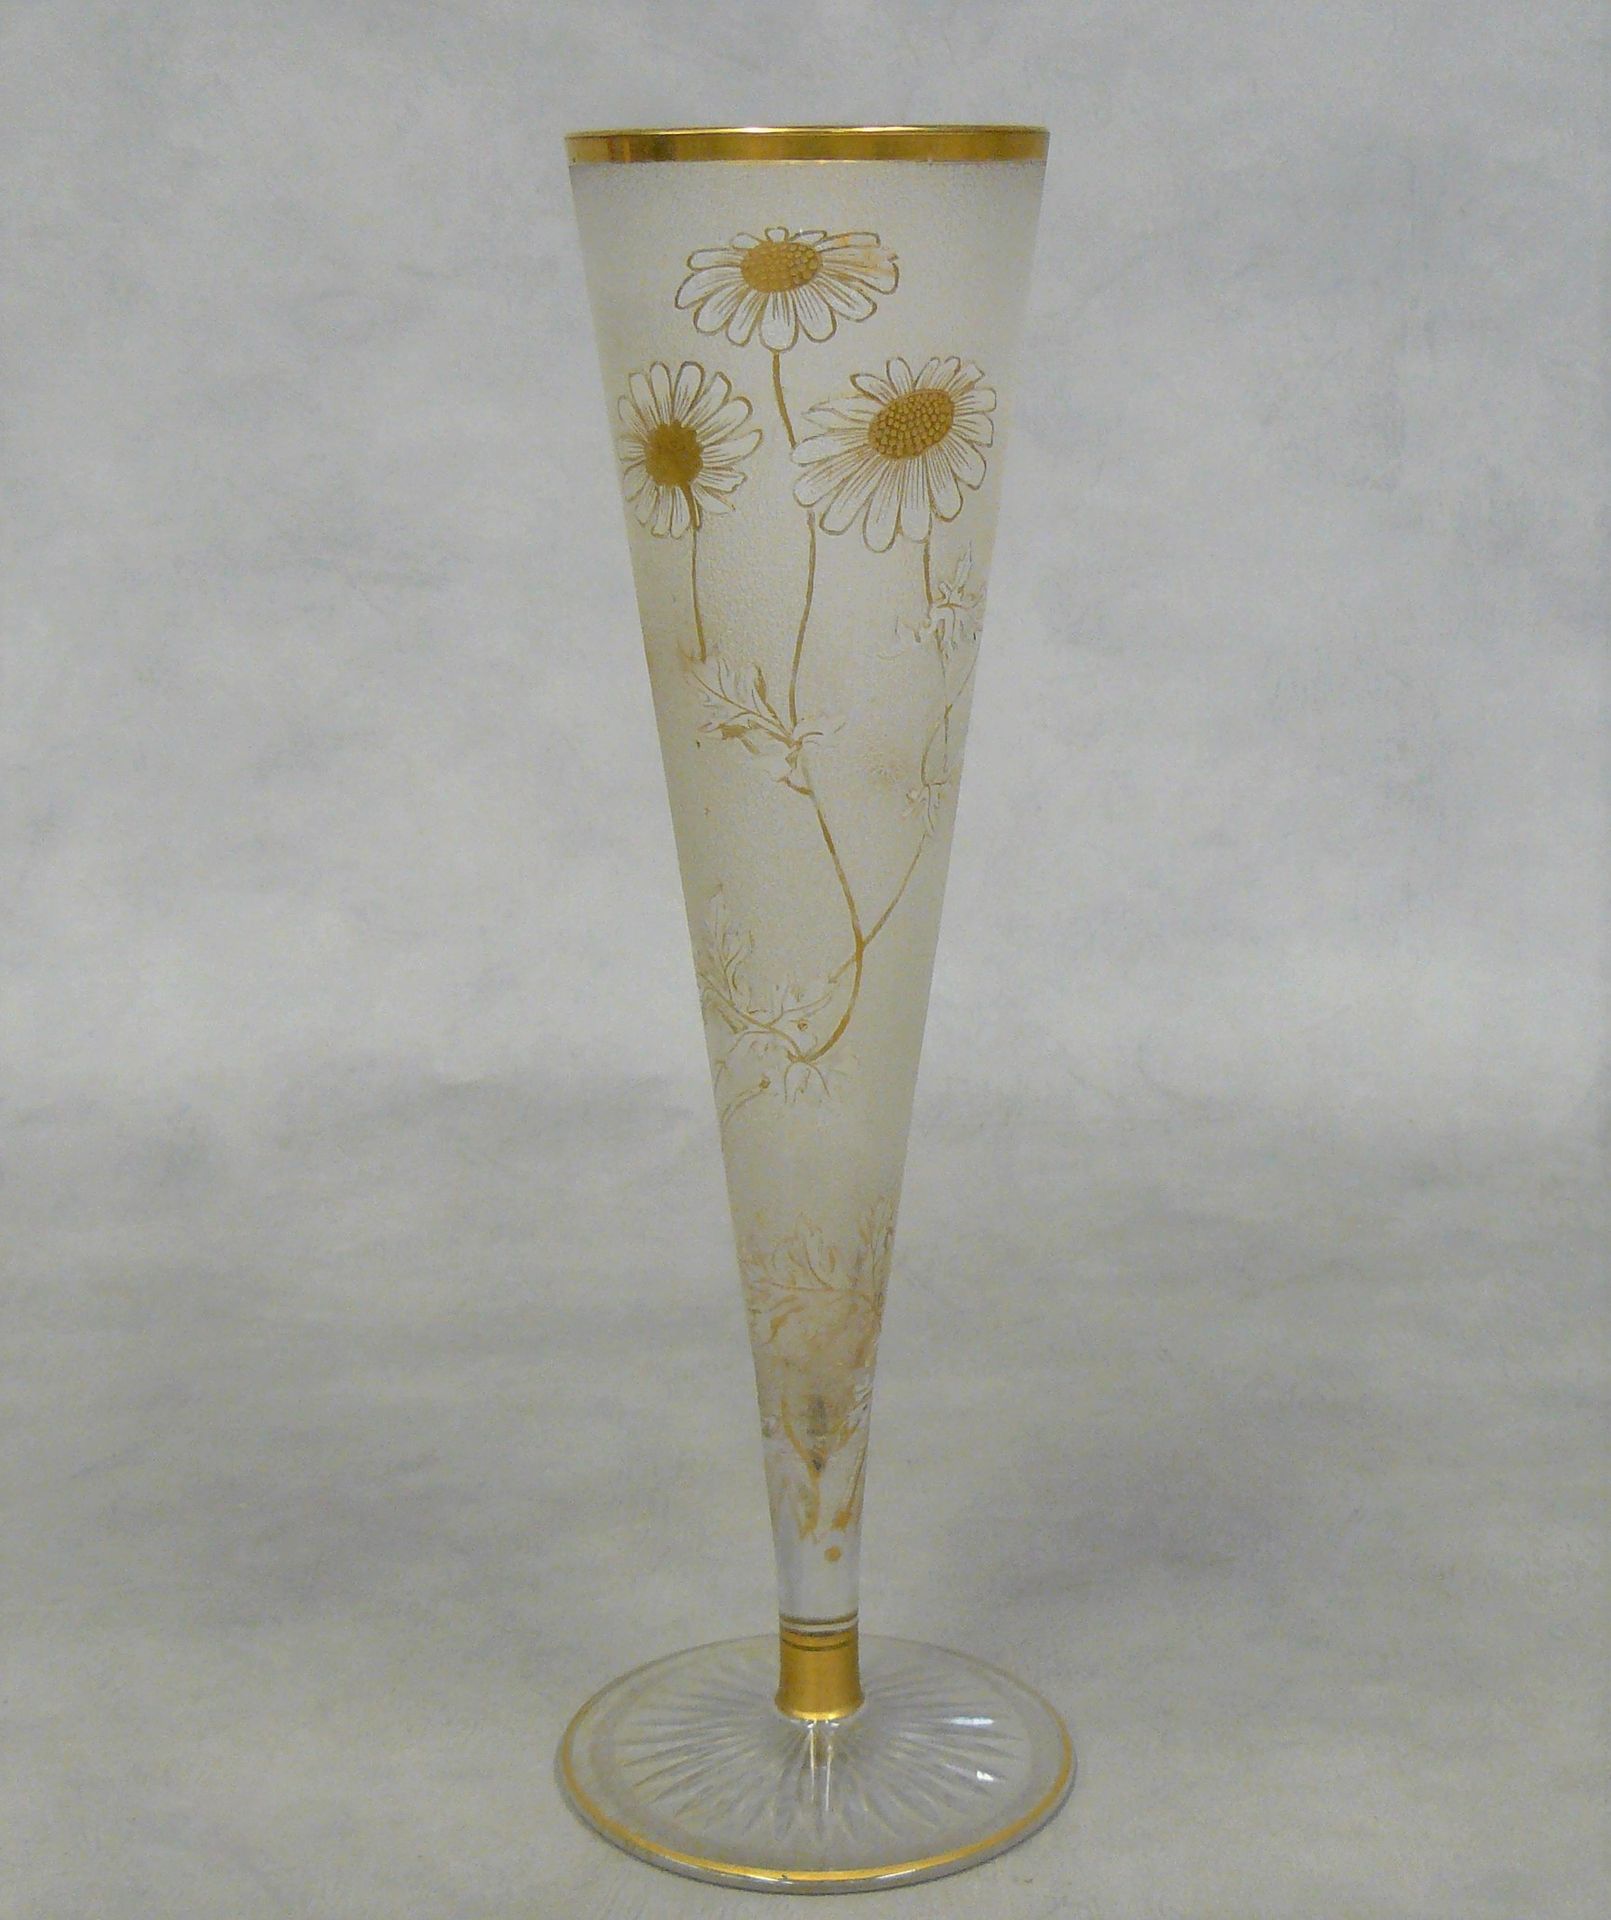 Null konische Vase aus mattiertem Glas mit goldenem Blumendekor - H 35 cm